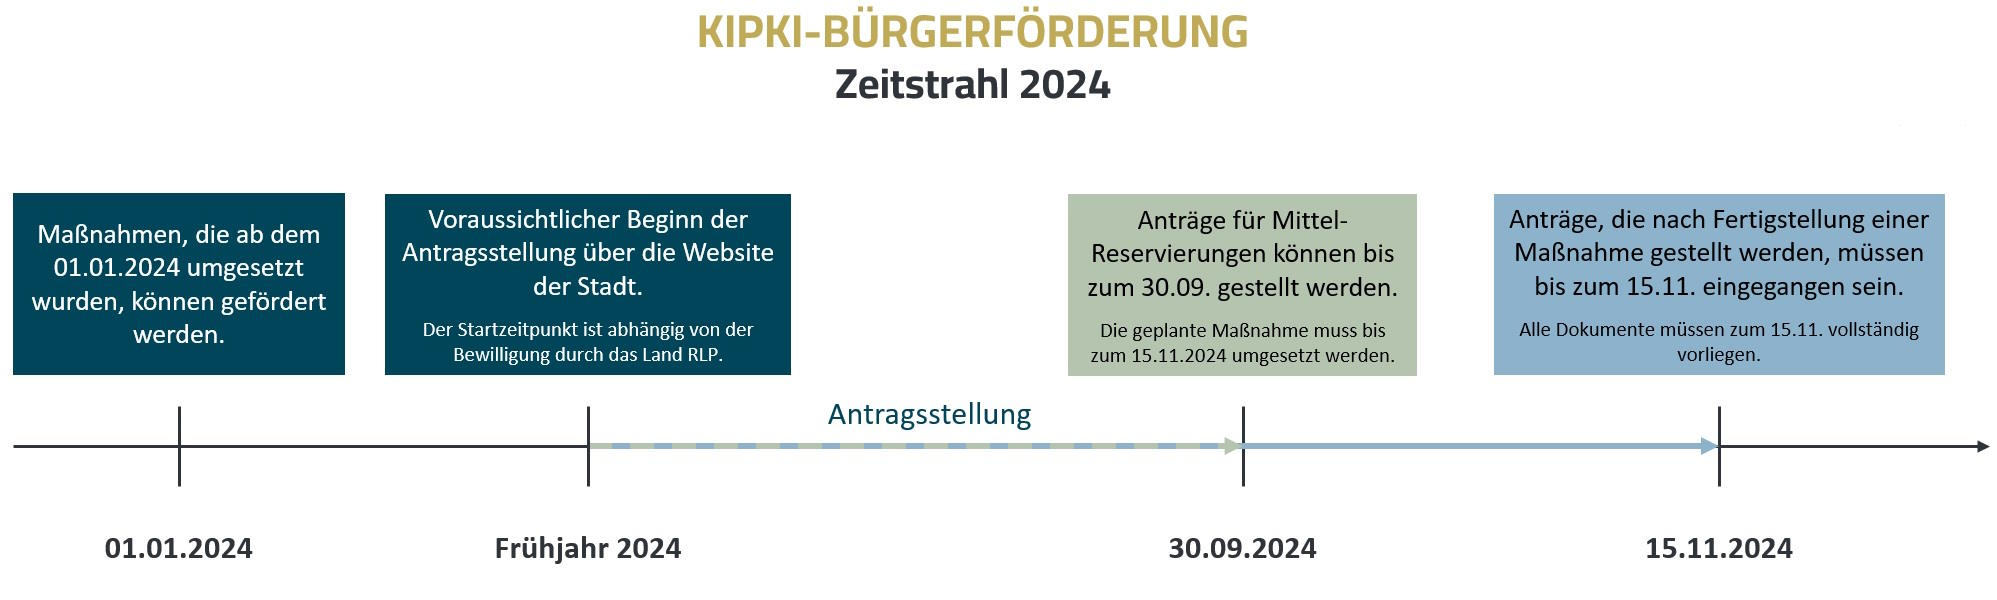 Bild vergrößern: Zeitstrahl Ablauf KIPKI-Bürgerförderung 2024